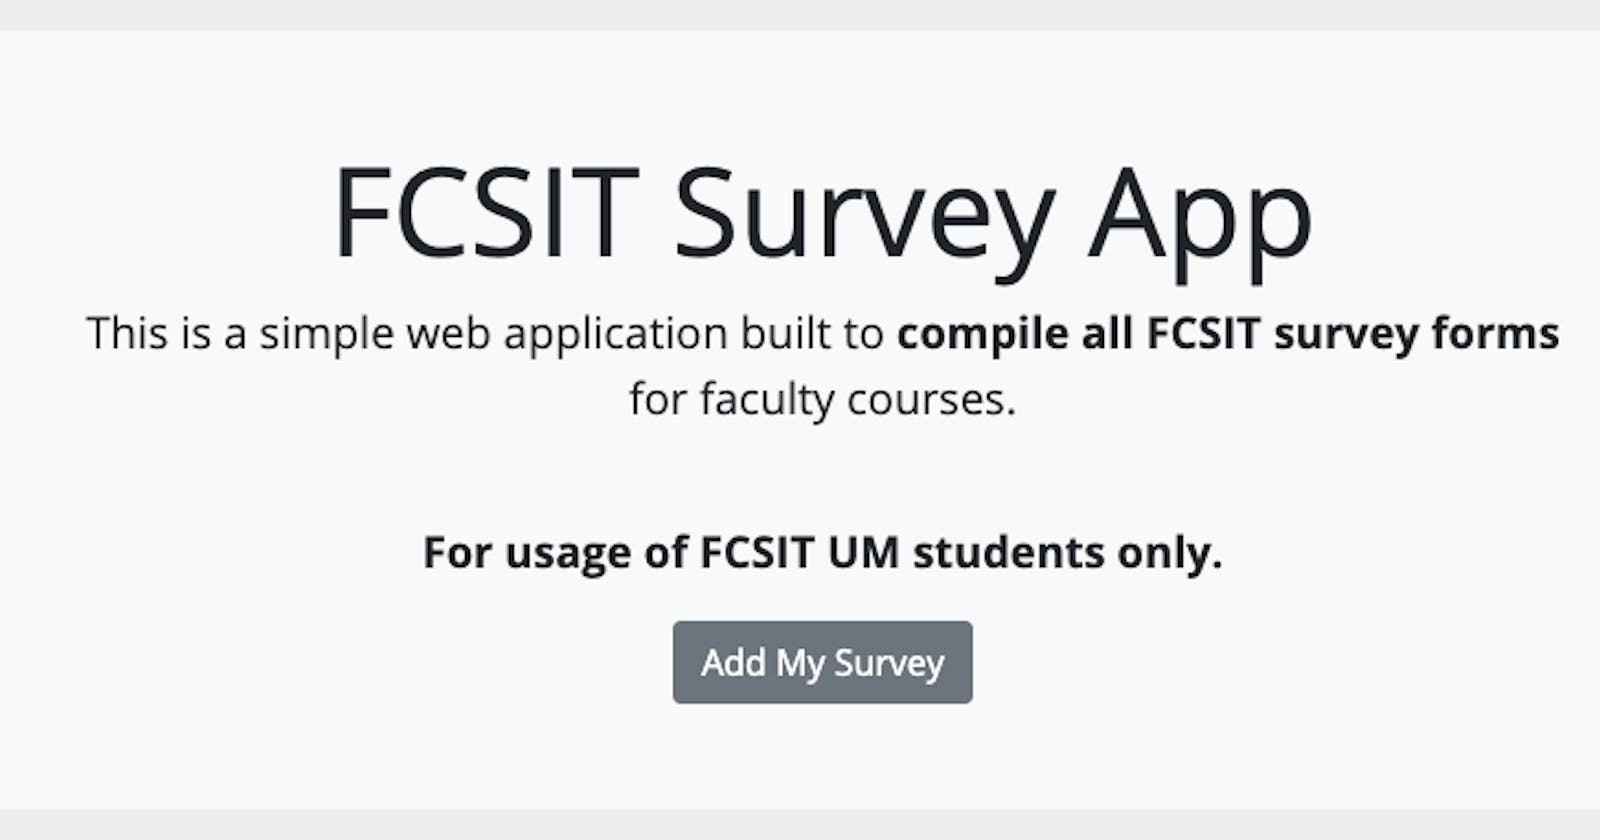 FCSIT Survey App